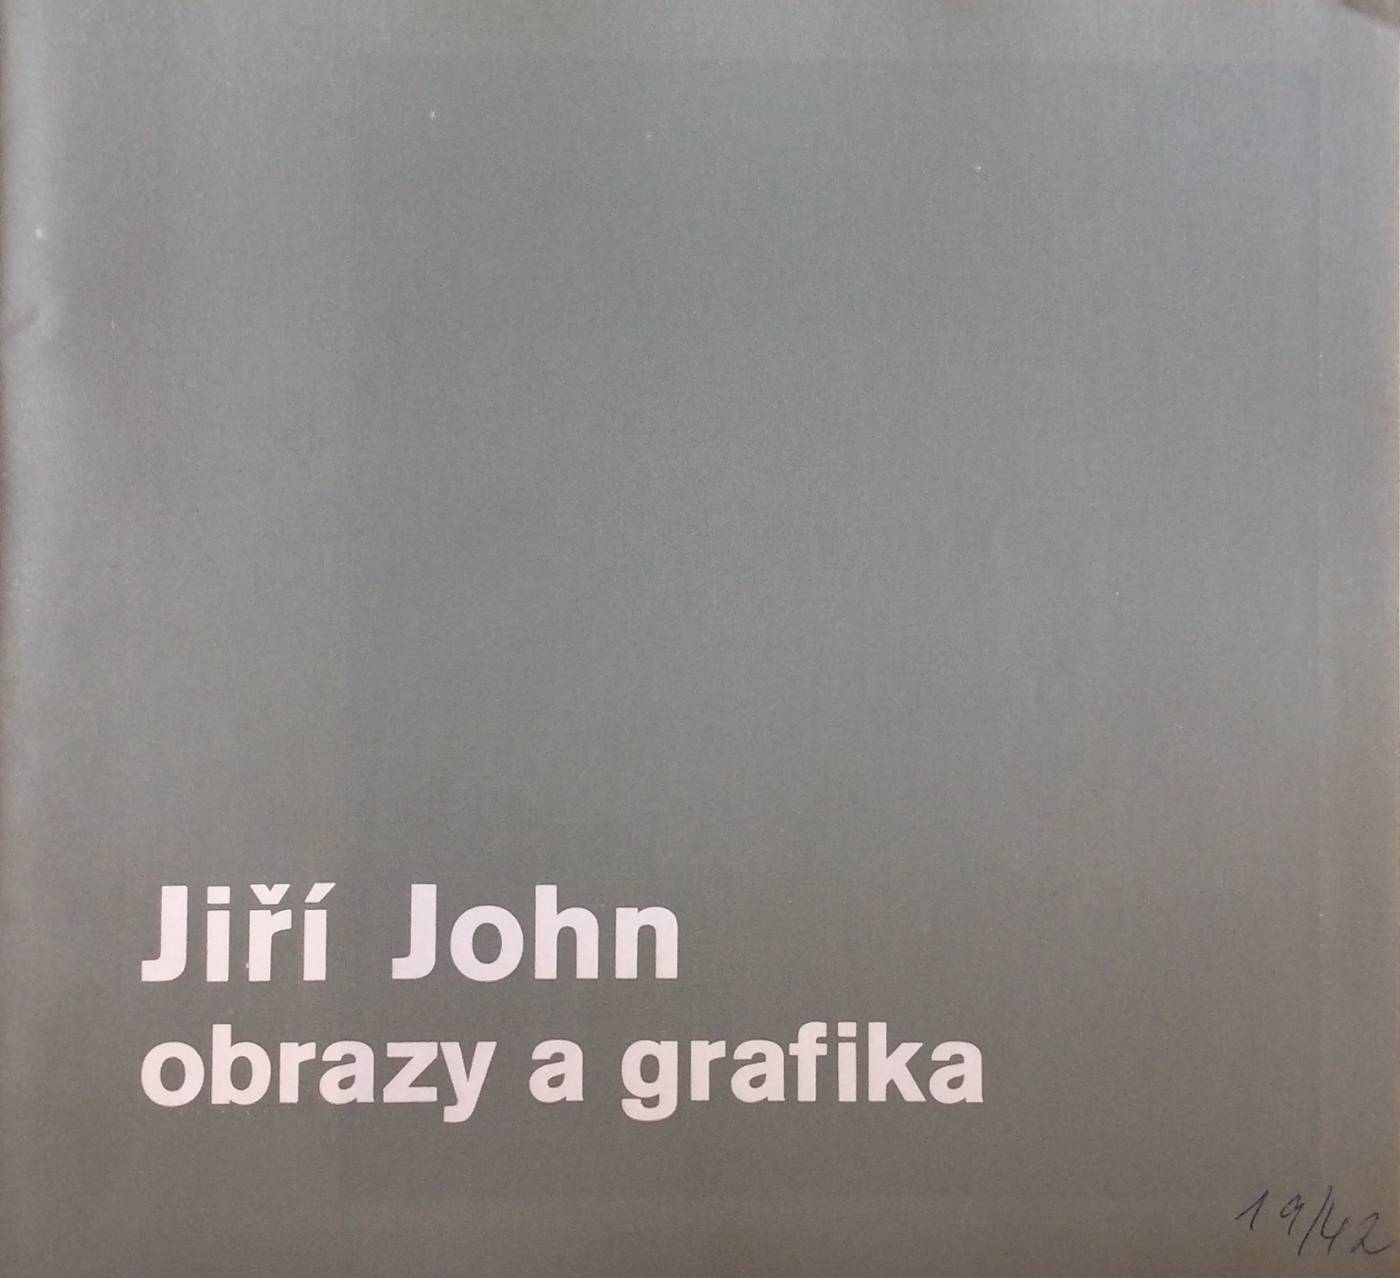 Jiří John – obrazy a grafika